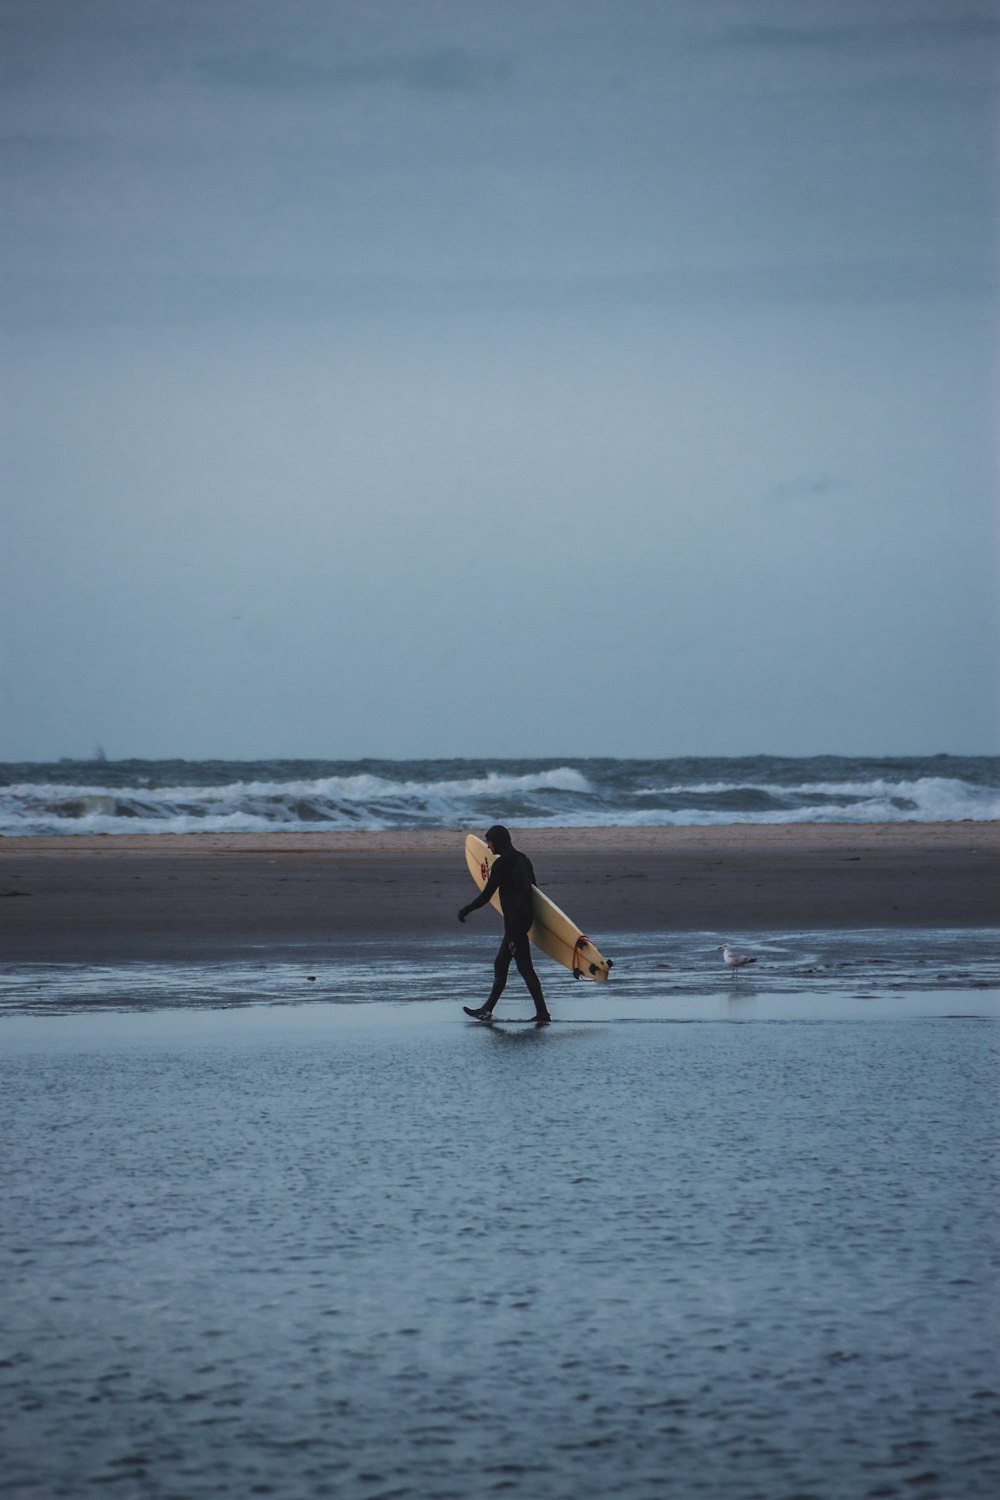 a man carrying a surfboard across a wet beach